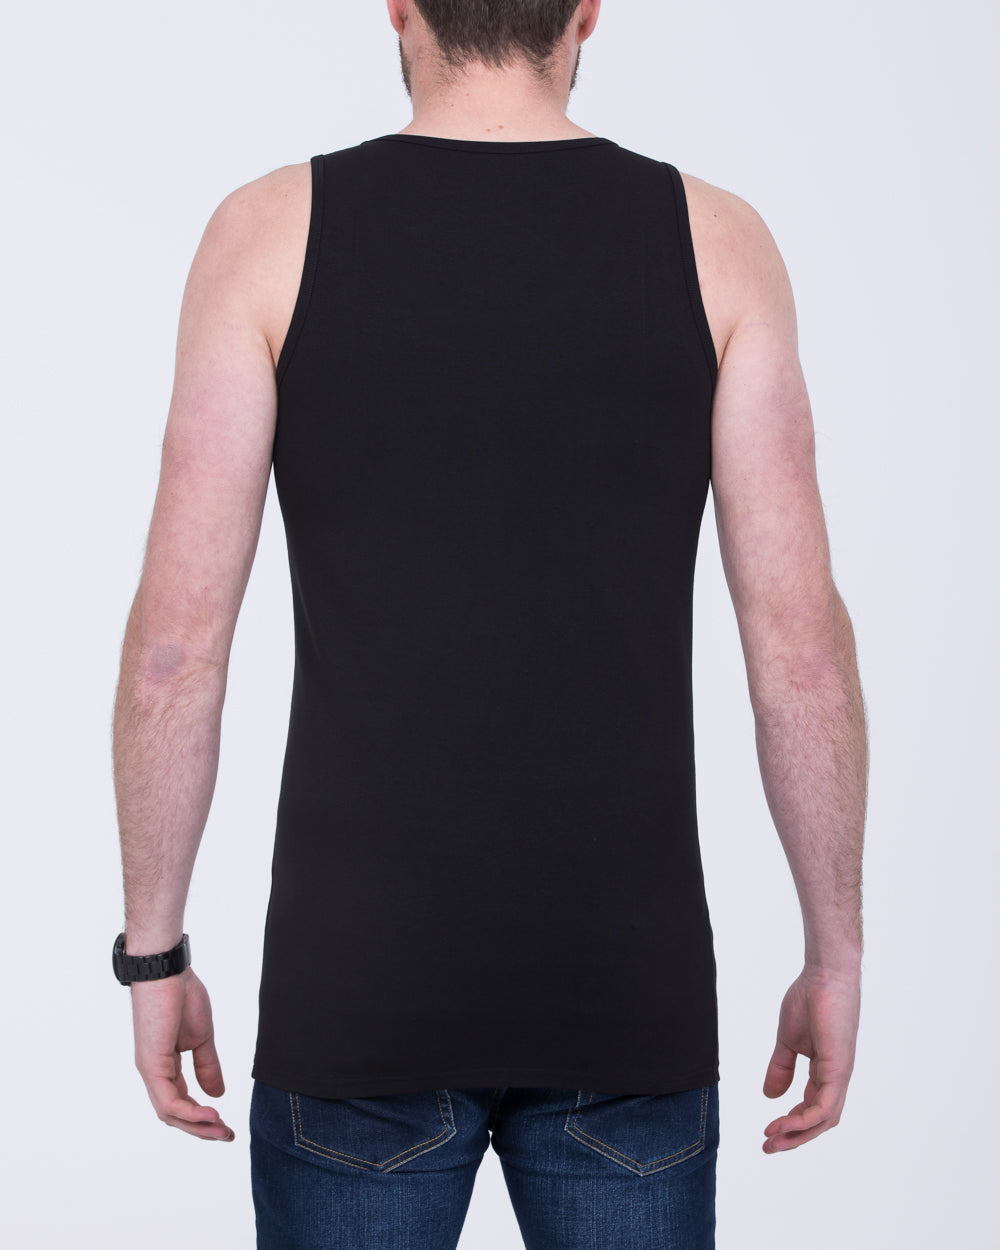 Girav Sleeveless Tall Vest (black) Twin Pack